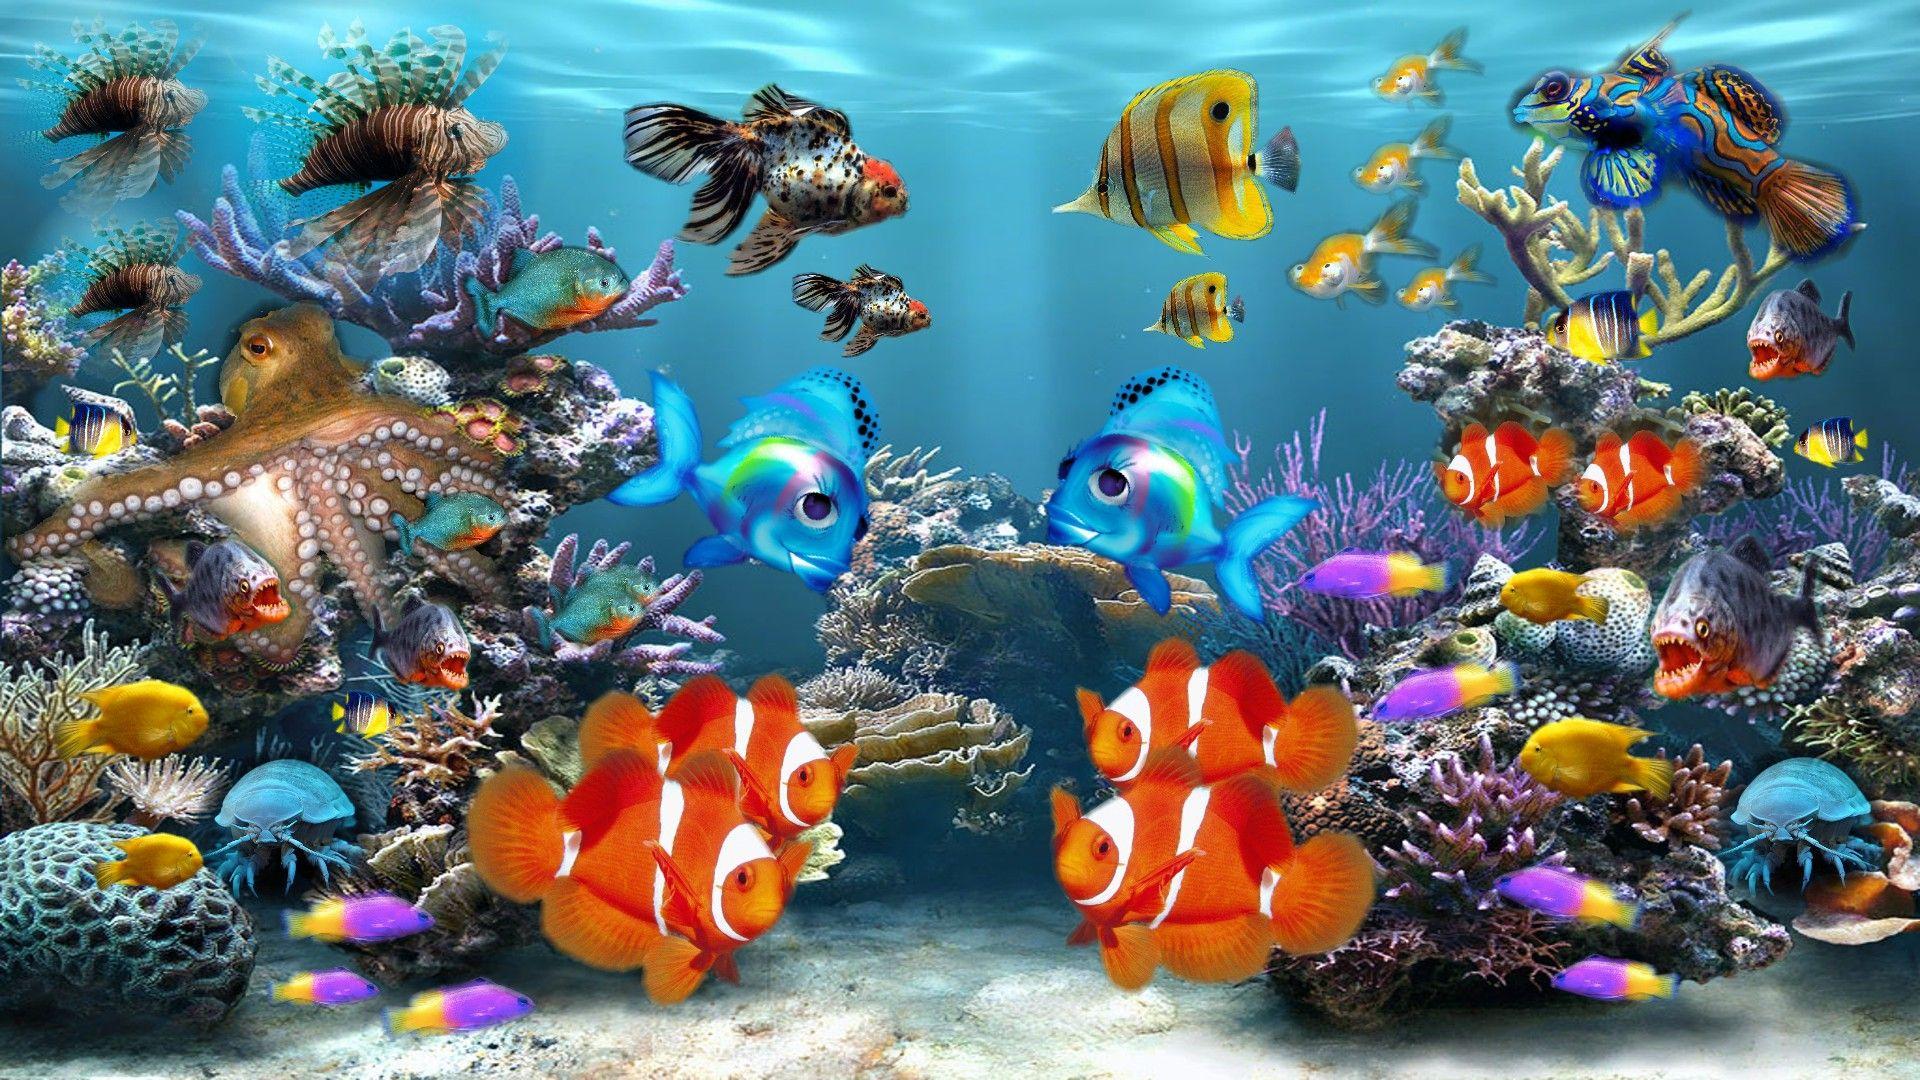 Fish Tank Moving Desktop Background. Aquarium Colors Screensaver. Aquarium live wallpaper, Fish wallpaper, Tropical wallpaper